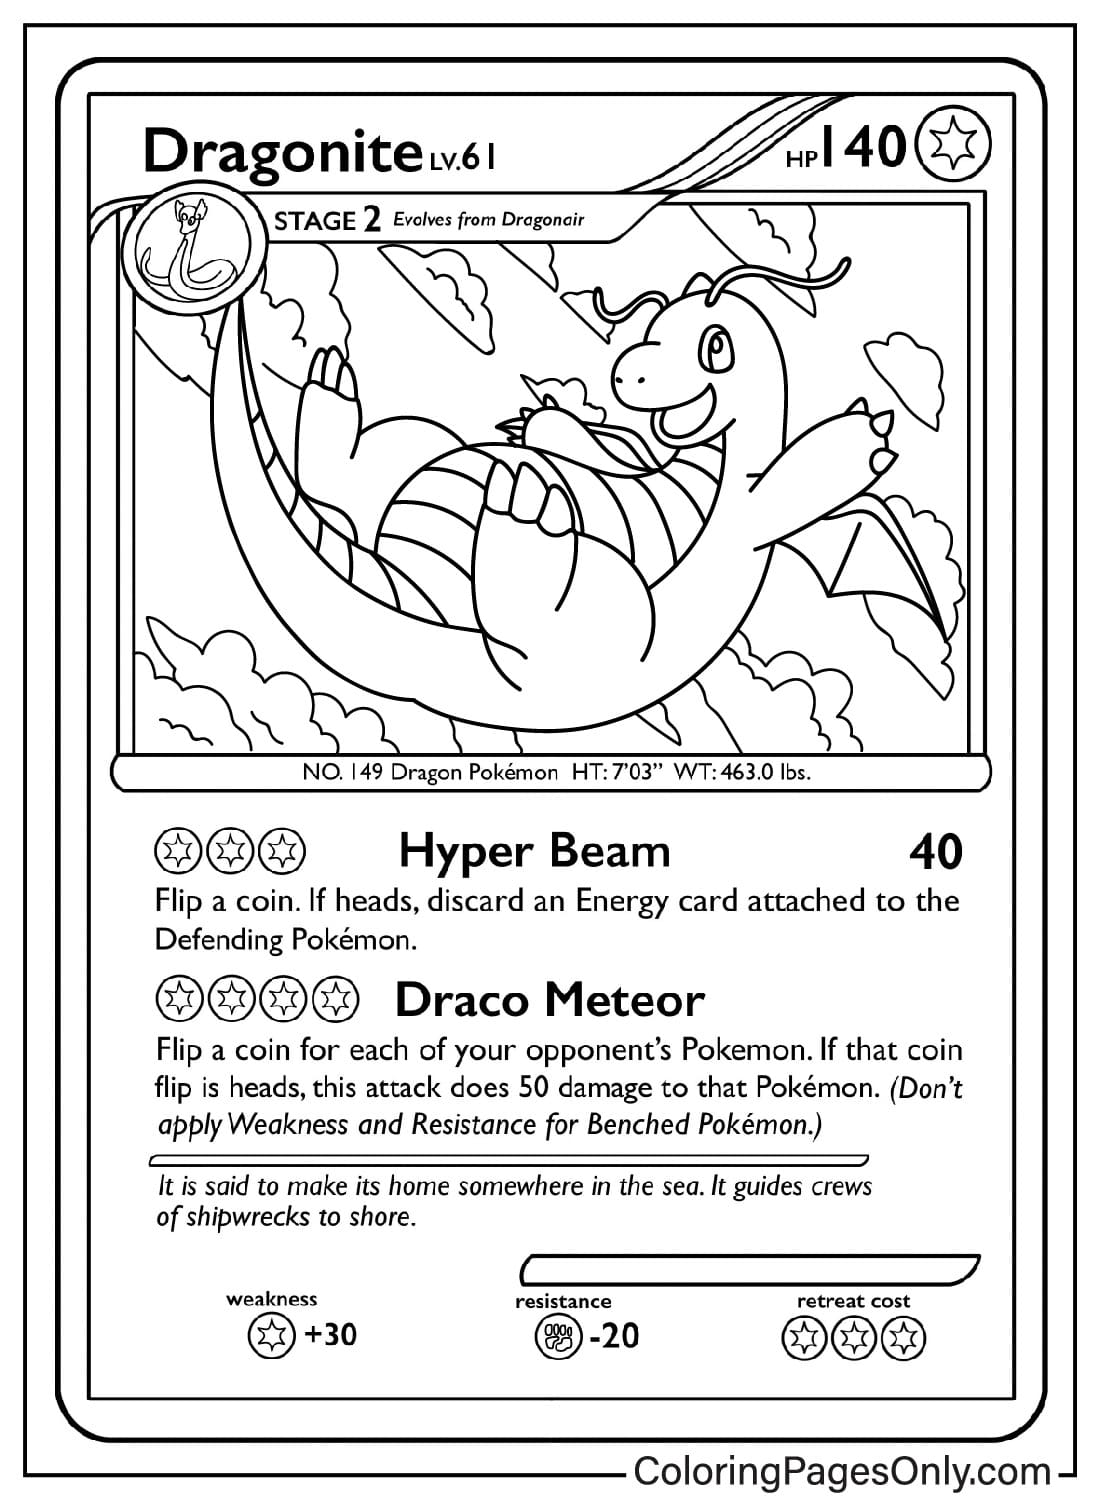 Dragonite-Karten-Malseite von Pokemon Card